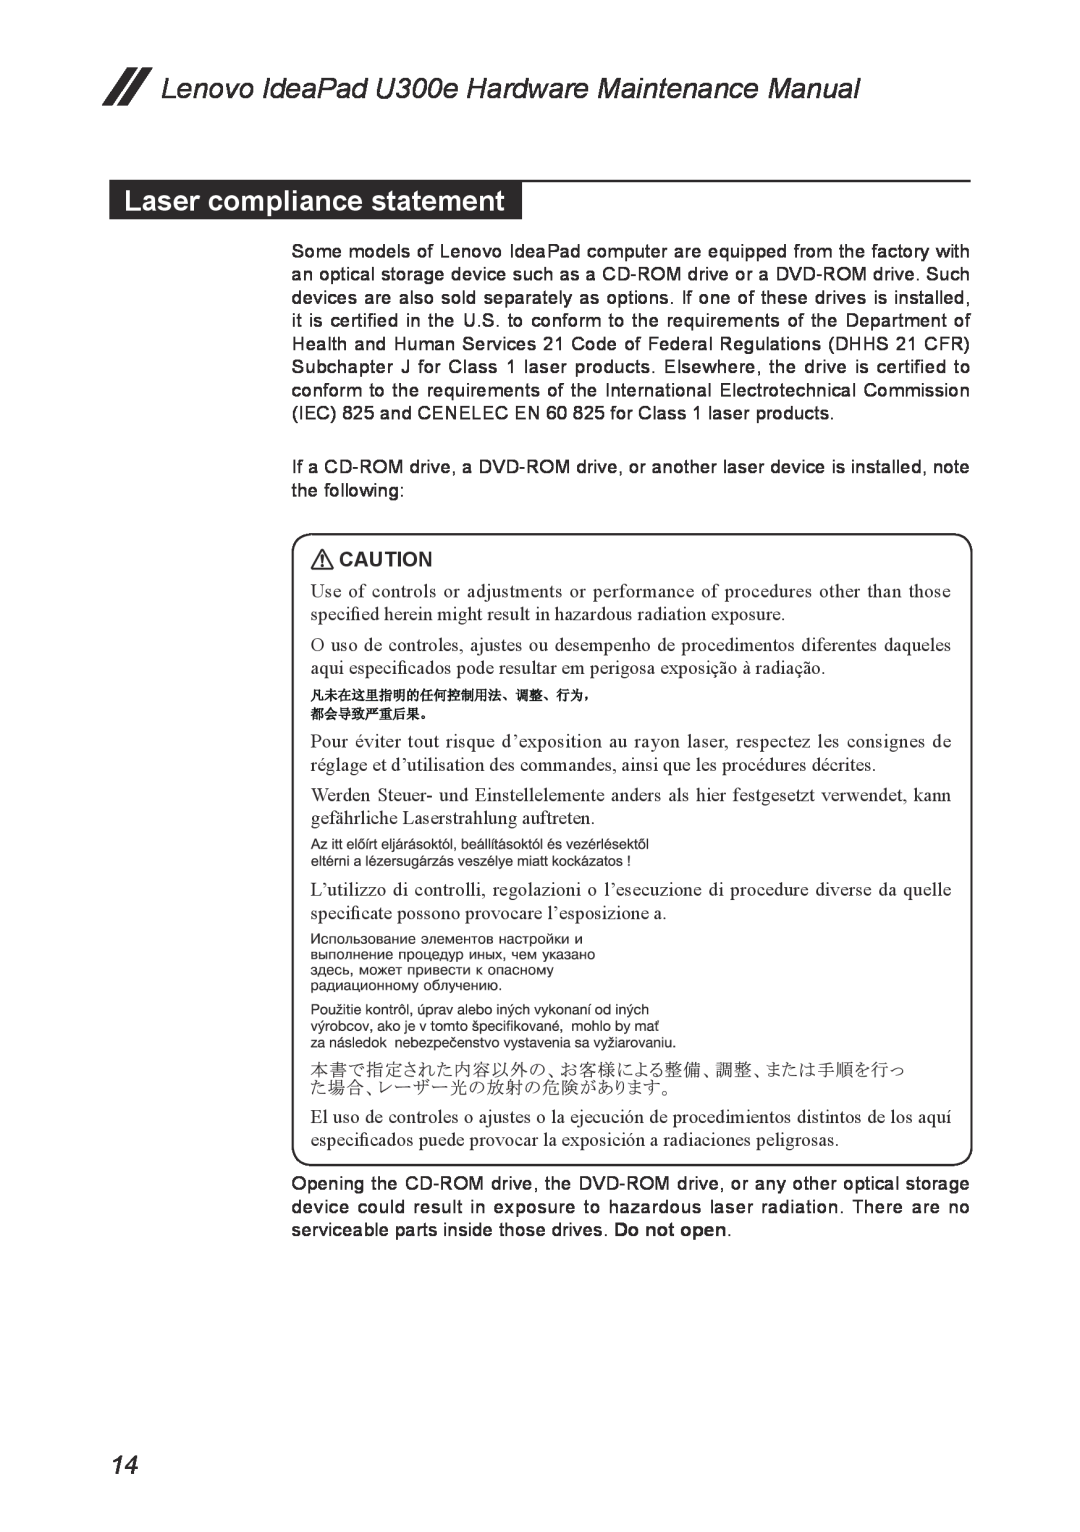 Lenovo U300E manual Laser compliance statement, Lenovo IdeaPad U300e Hardware Maintenance Manual 